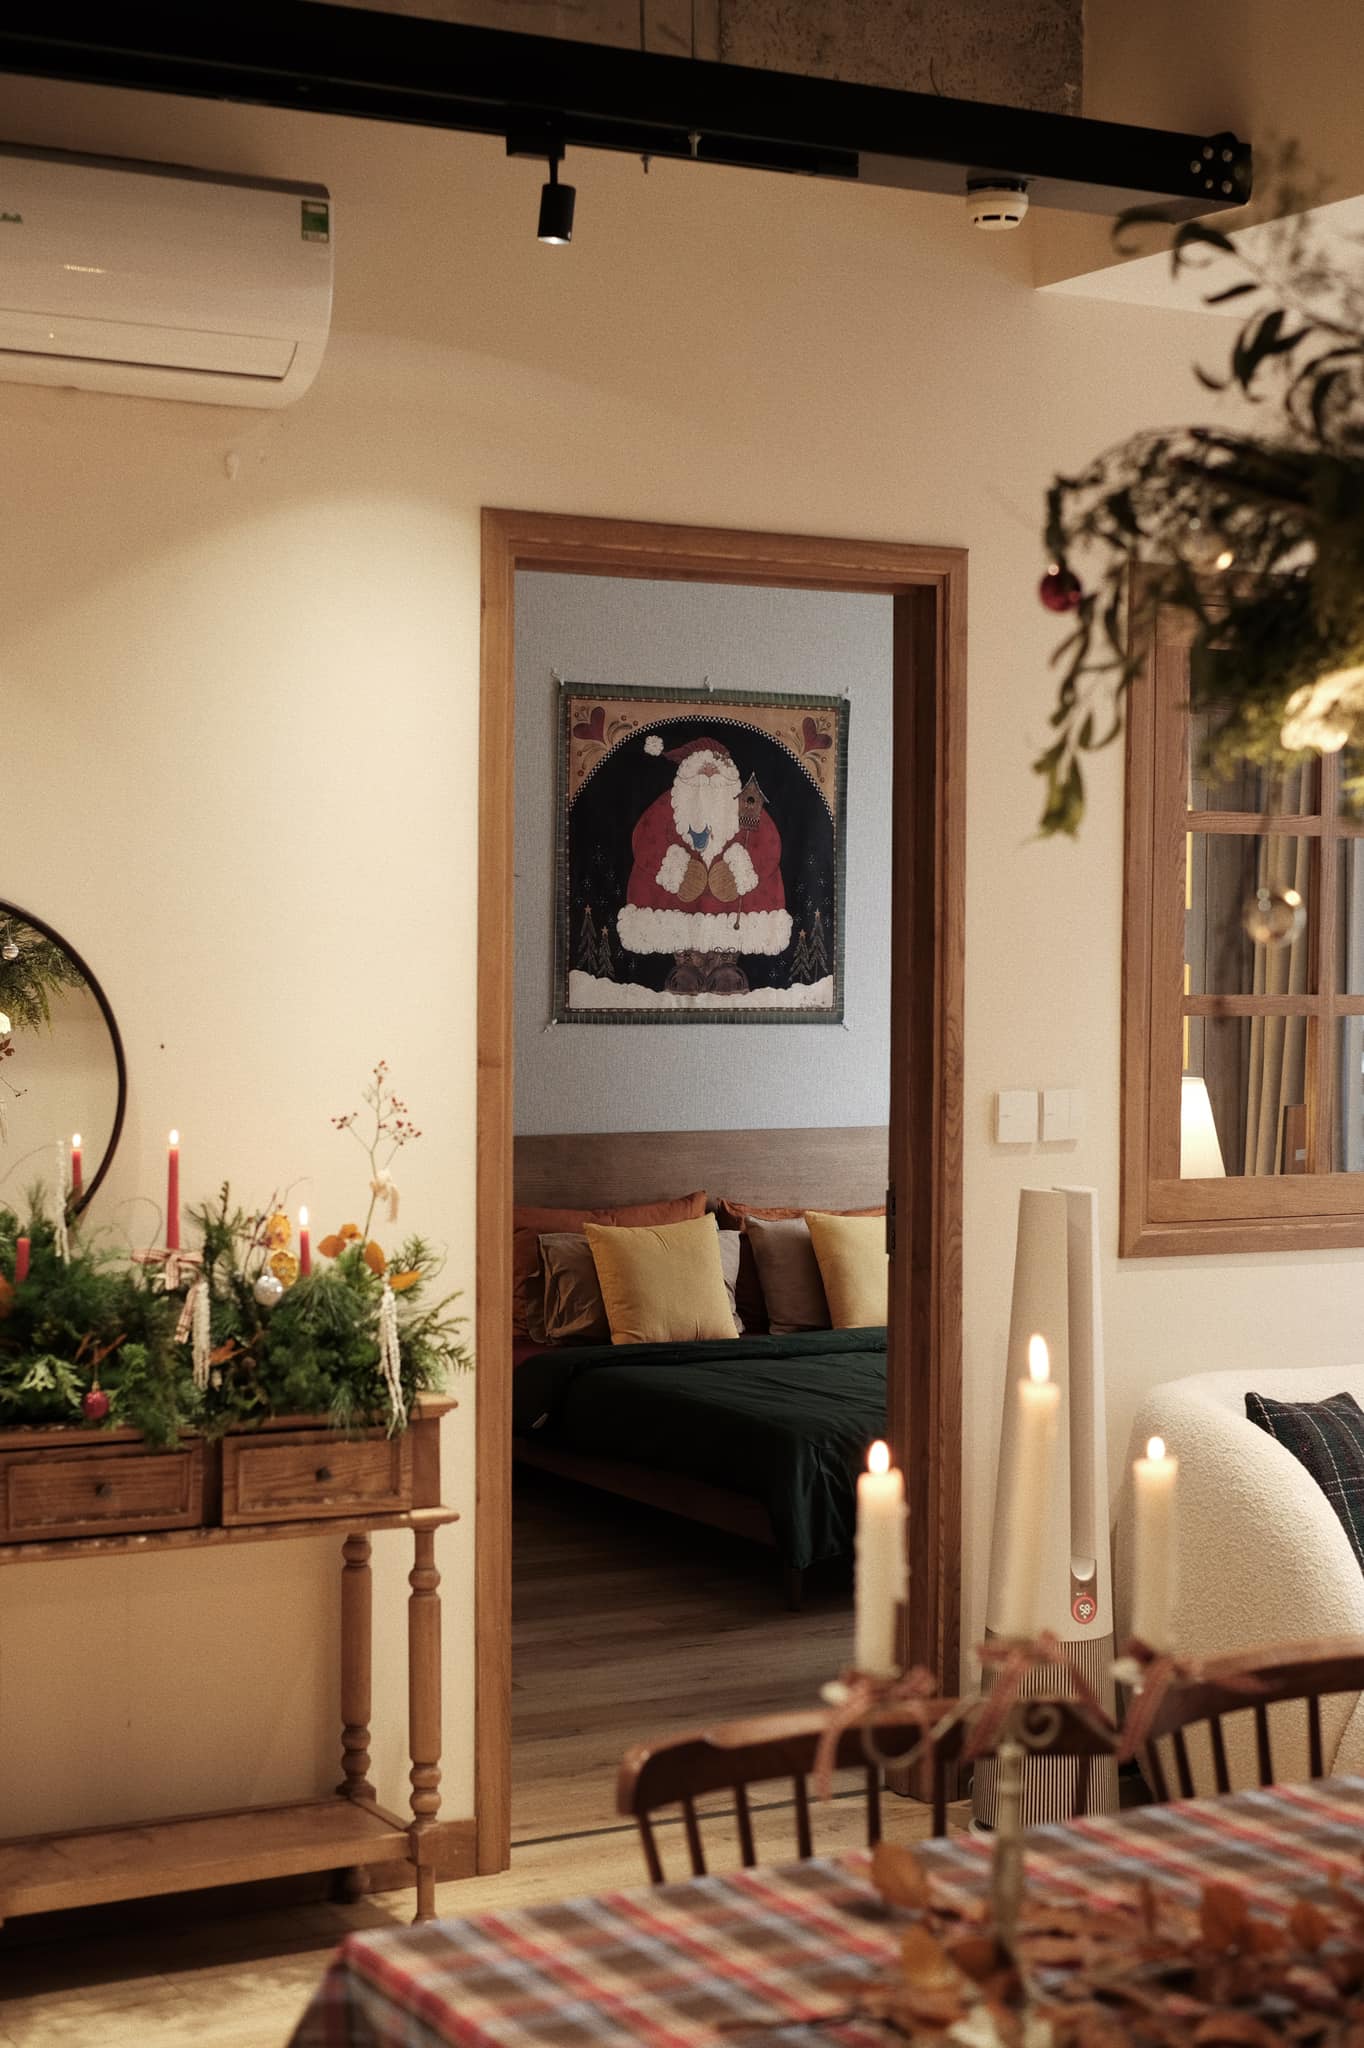 Mê cách mẹ 9x mang không khí Giáng sinh vào nhà: Đơn giản nhưng sang, cây thông trang trí dễ mà vẫn nổi bật